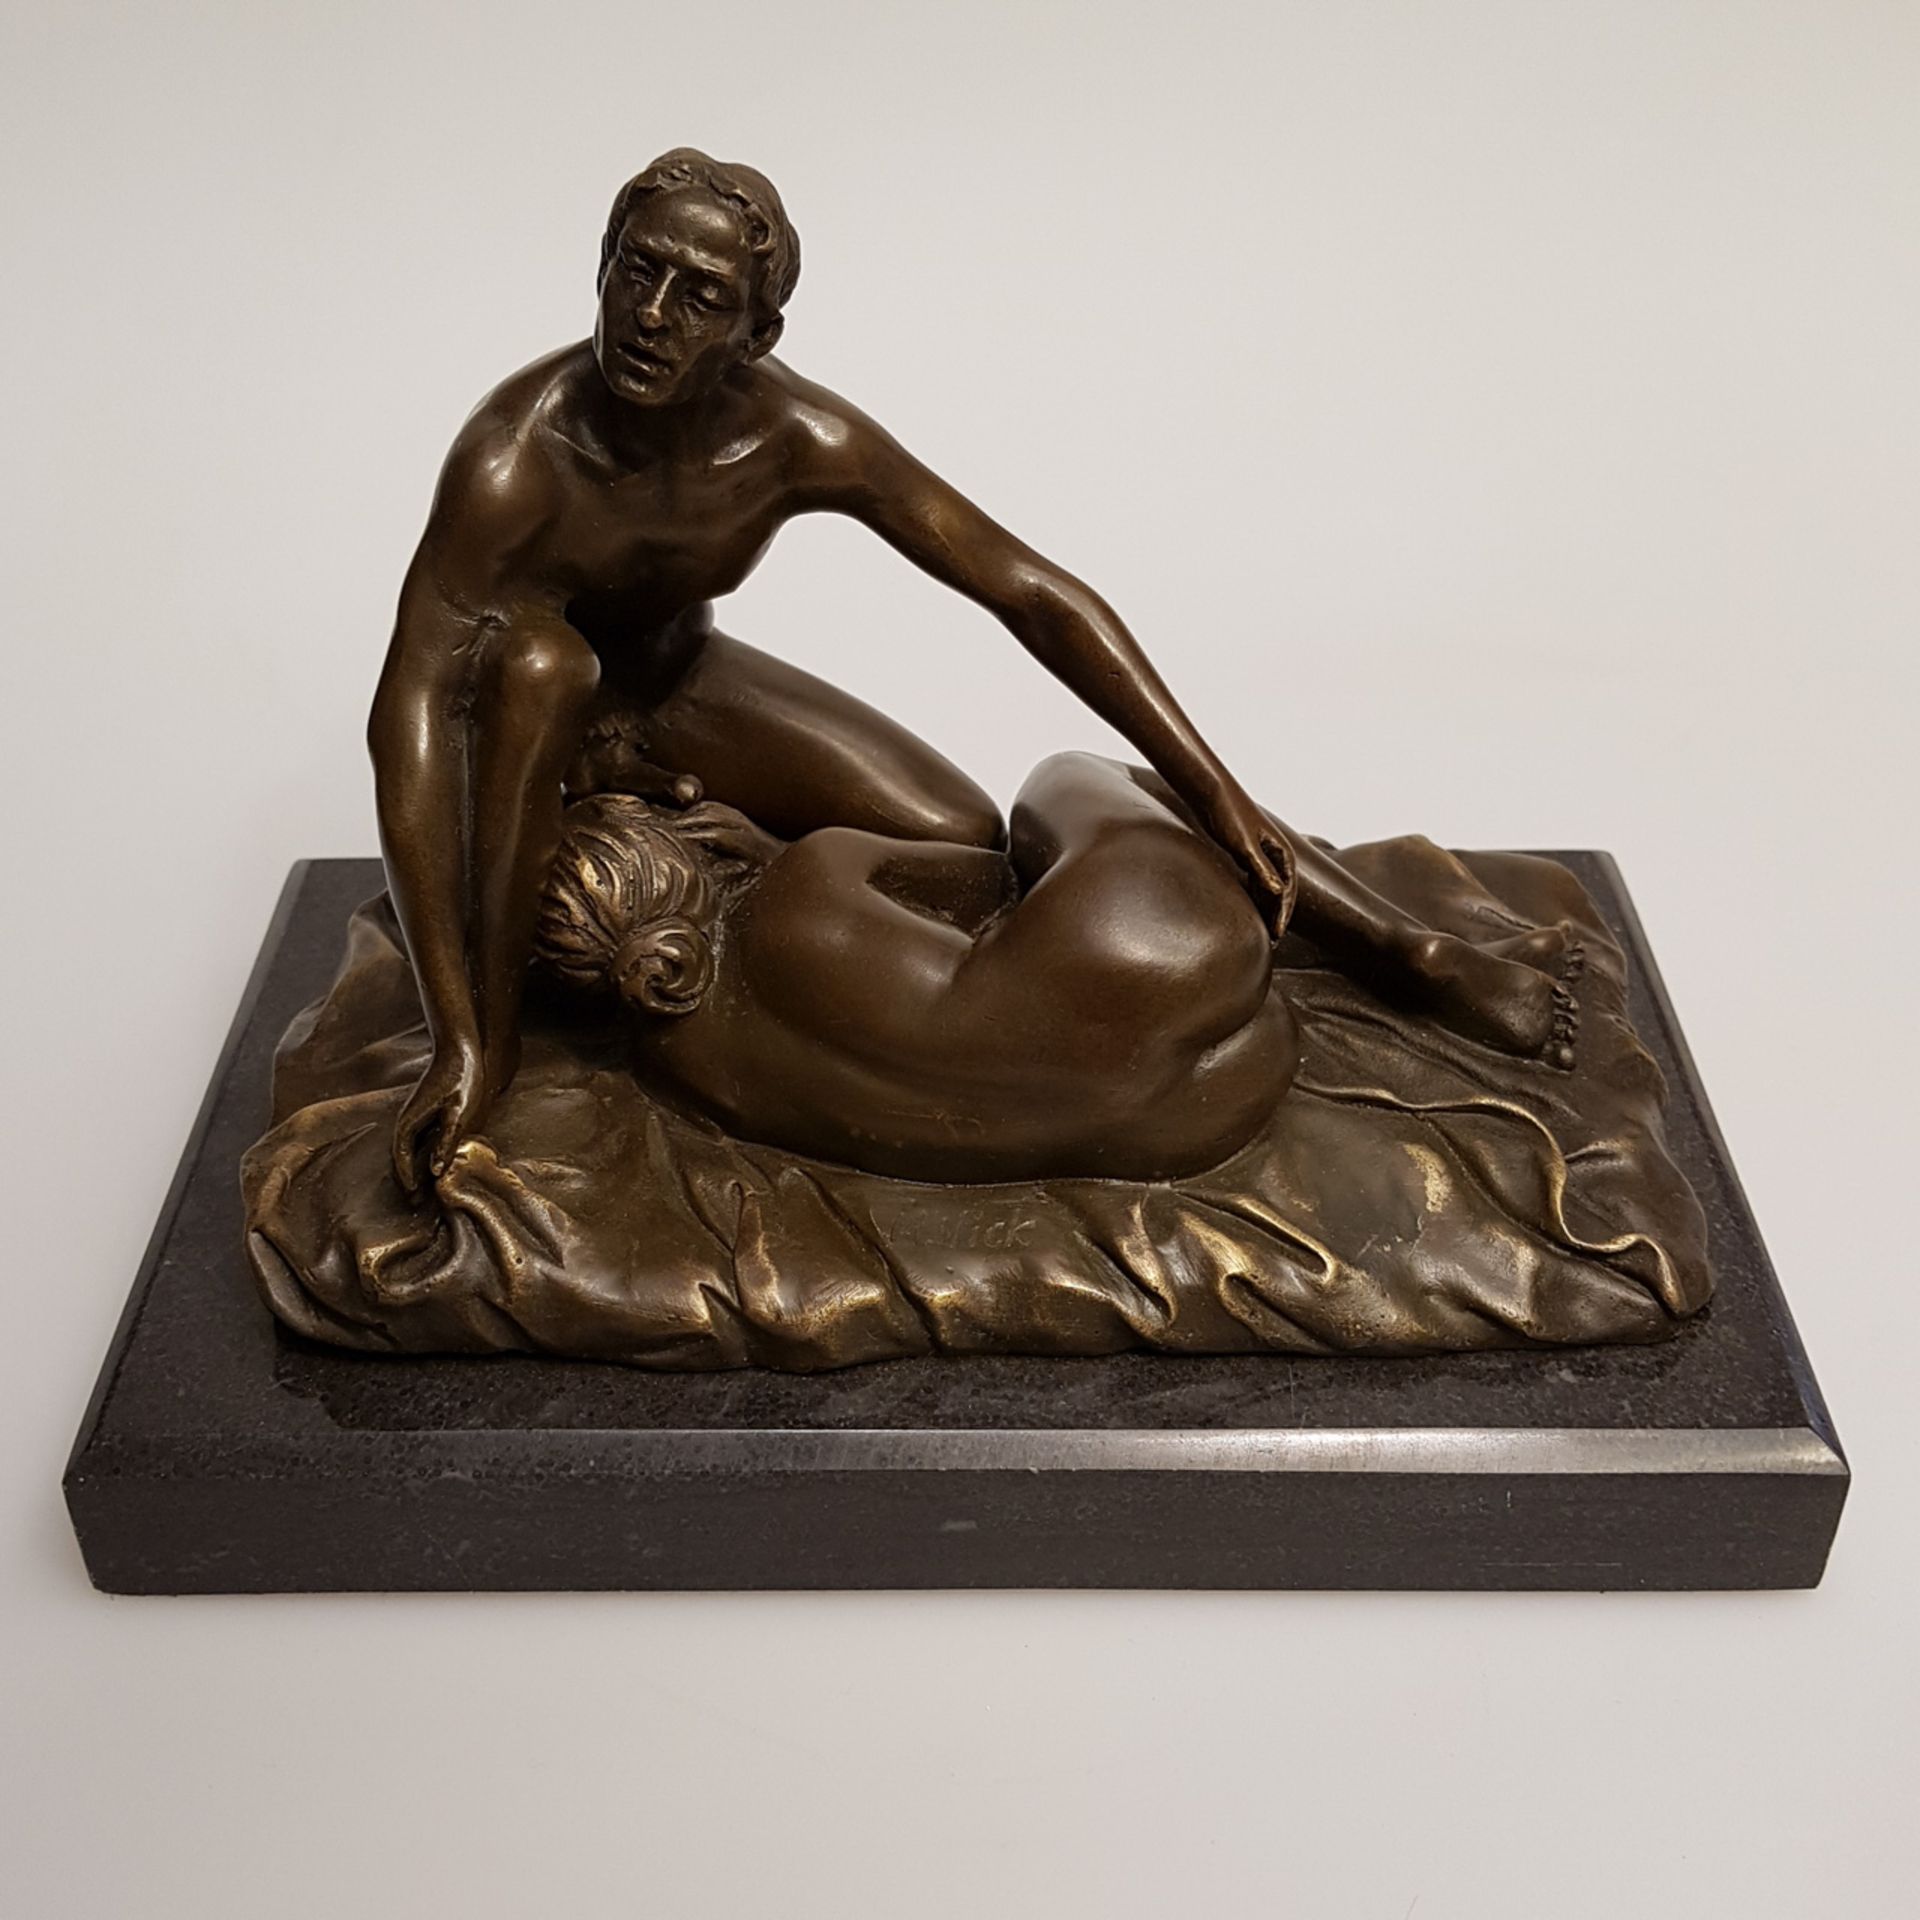 Bronze-Akt, erotische Szene, Grösse: 18 x 10 cm, zweiteilig